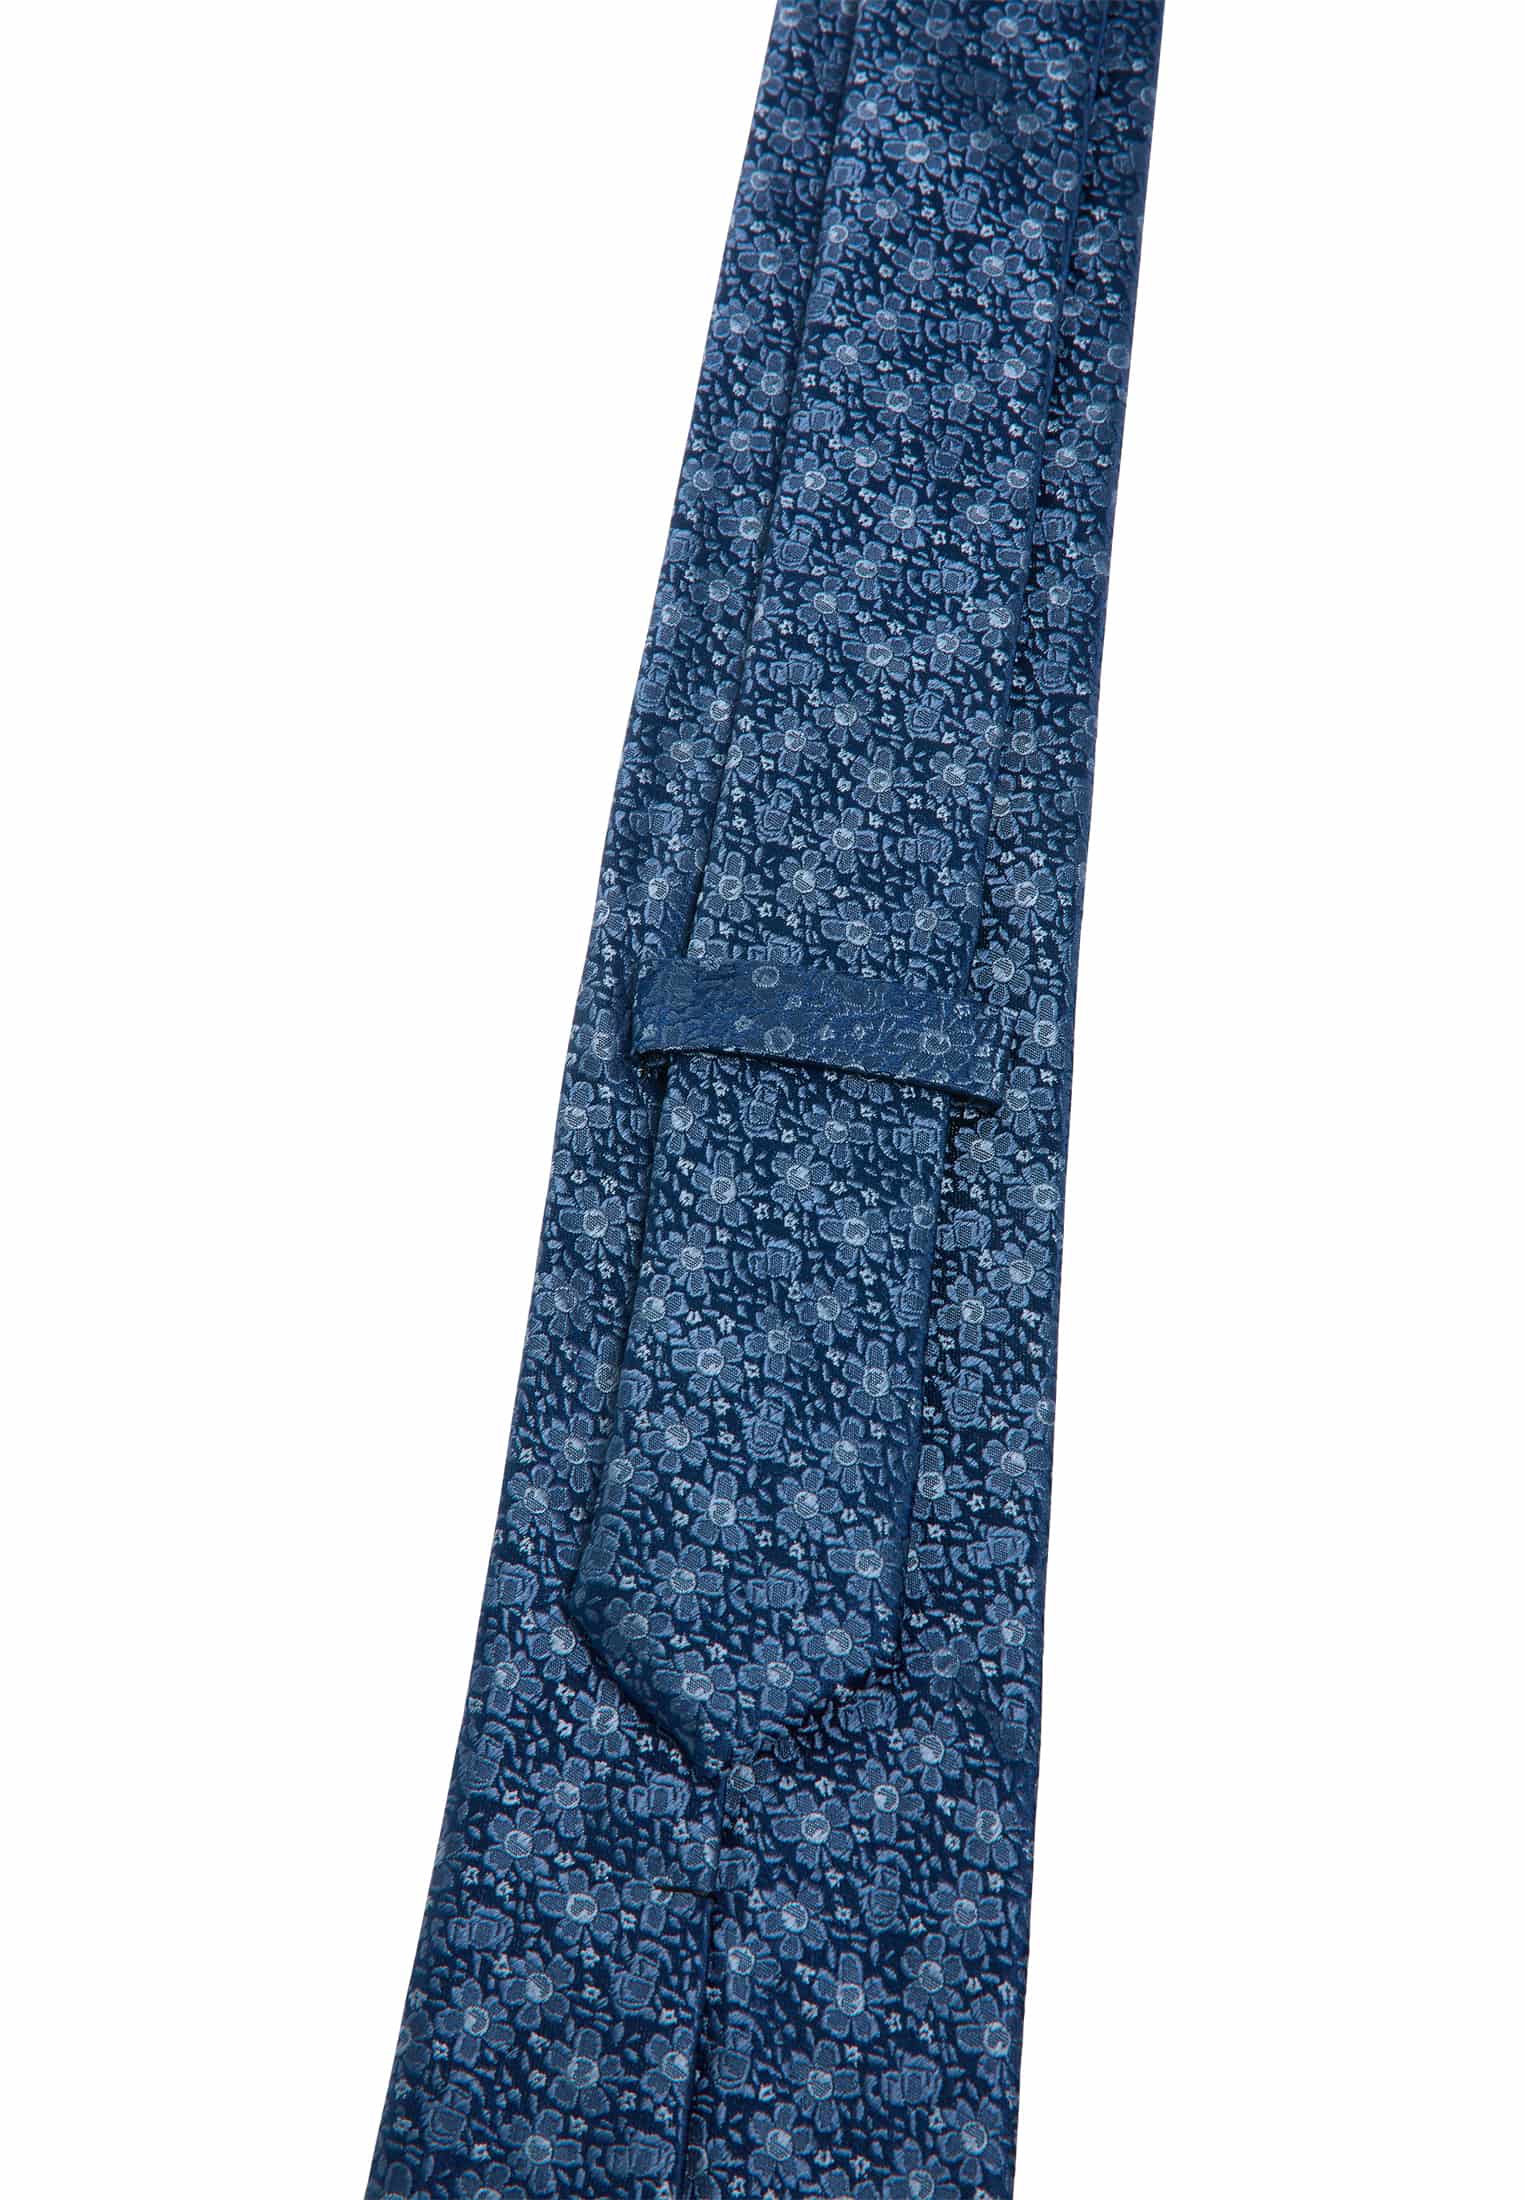 Cravate bleu estampé